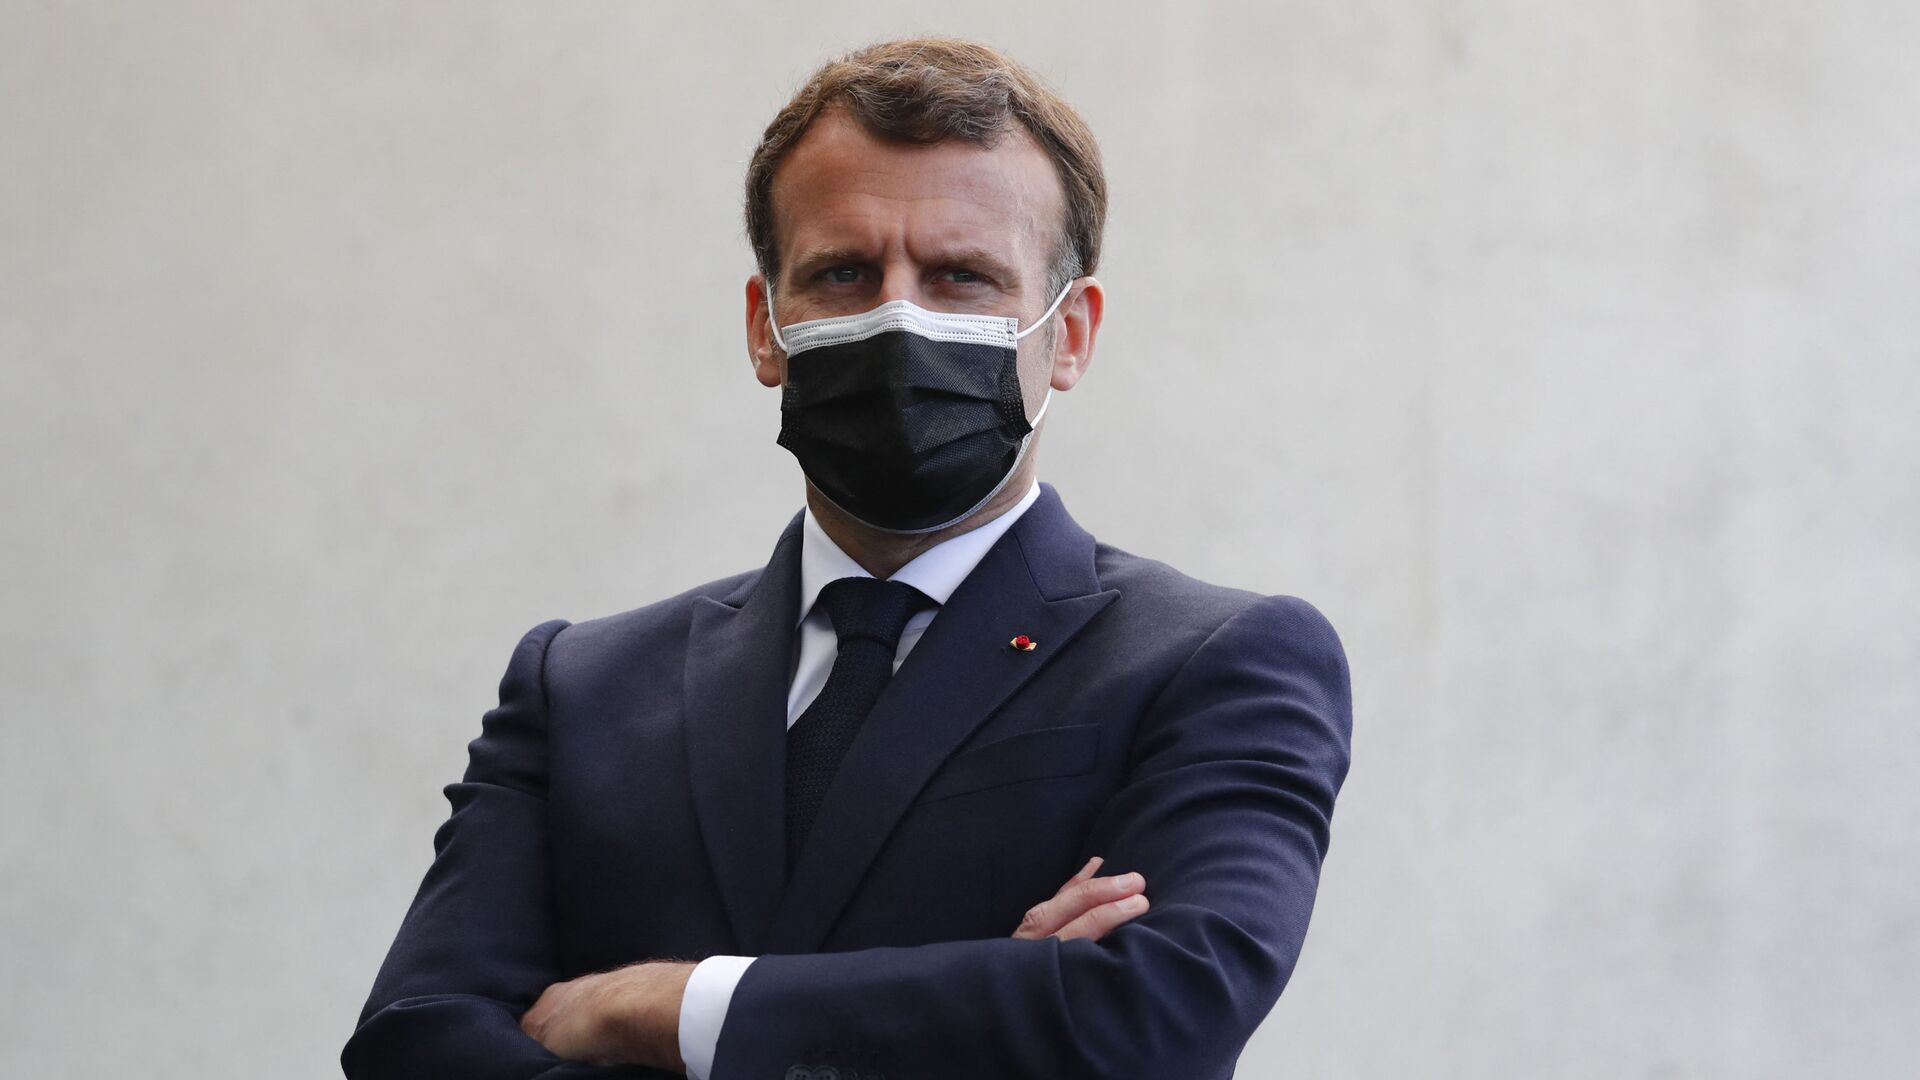 Le Président de la République française Emmanuel Macron lors d'un déplacement au commissariat de police de Montpellier, le 19 avril 2021 - Sputnik Afrique, 1920, 19.04.2021